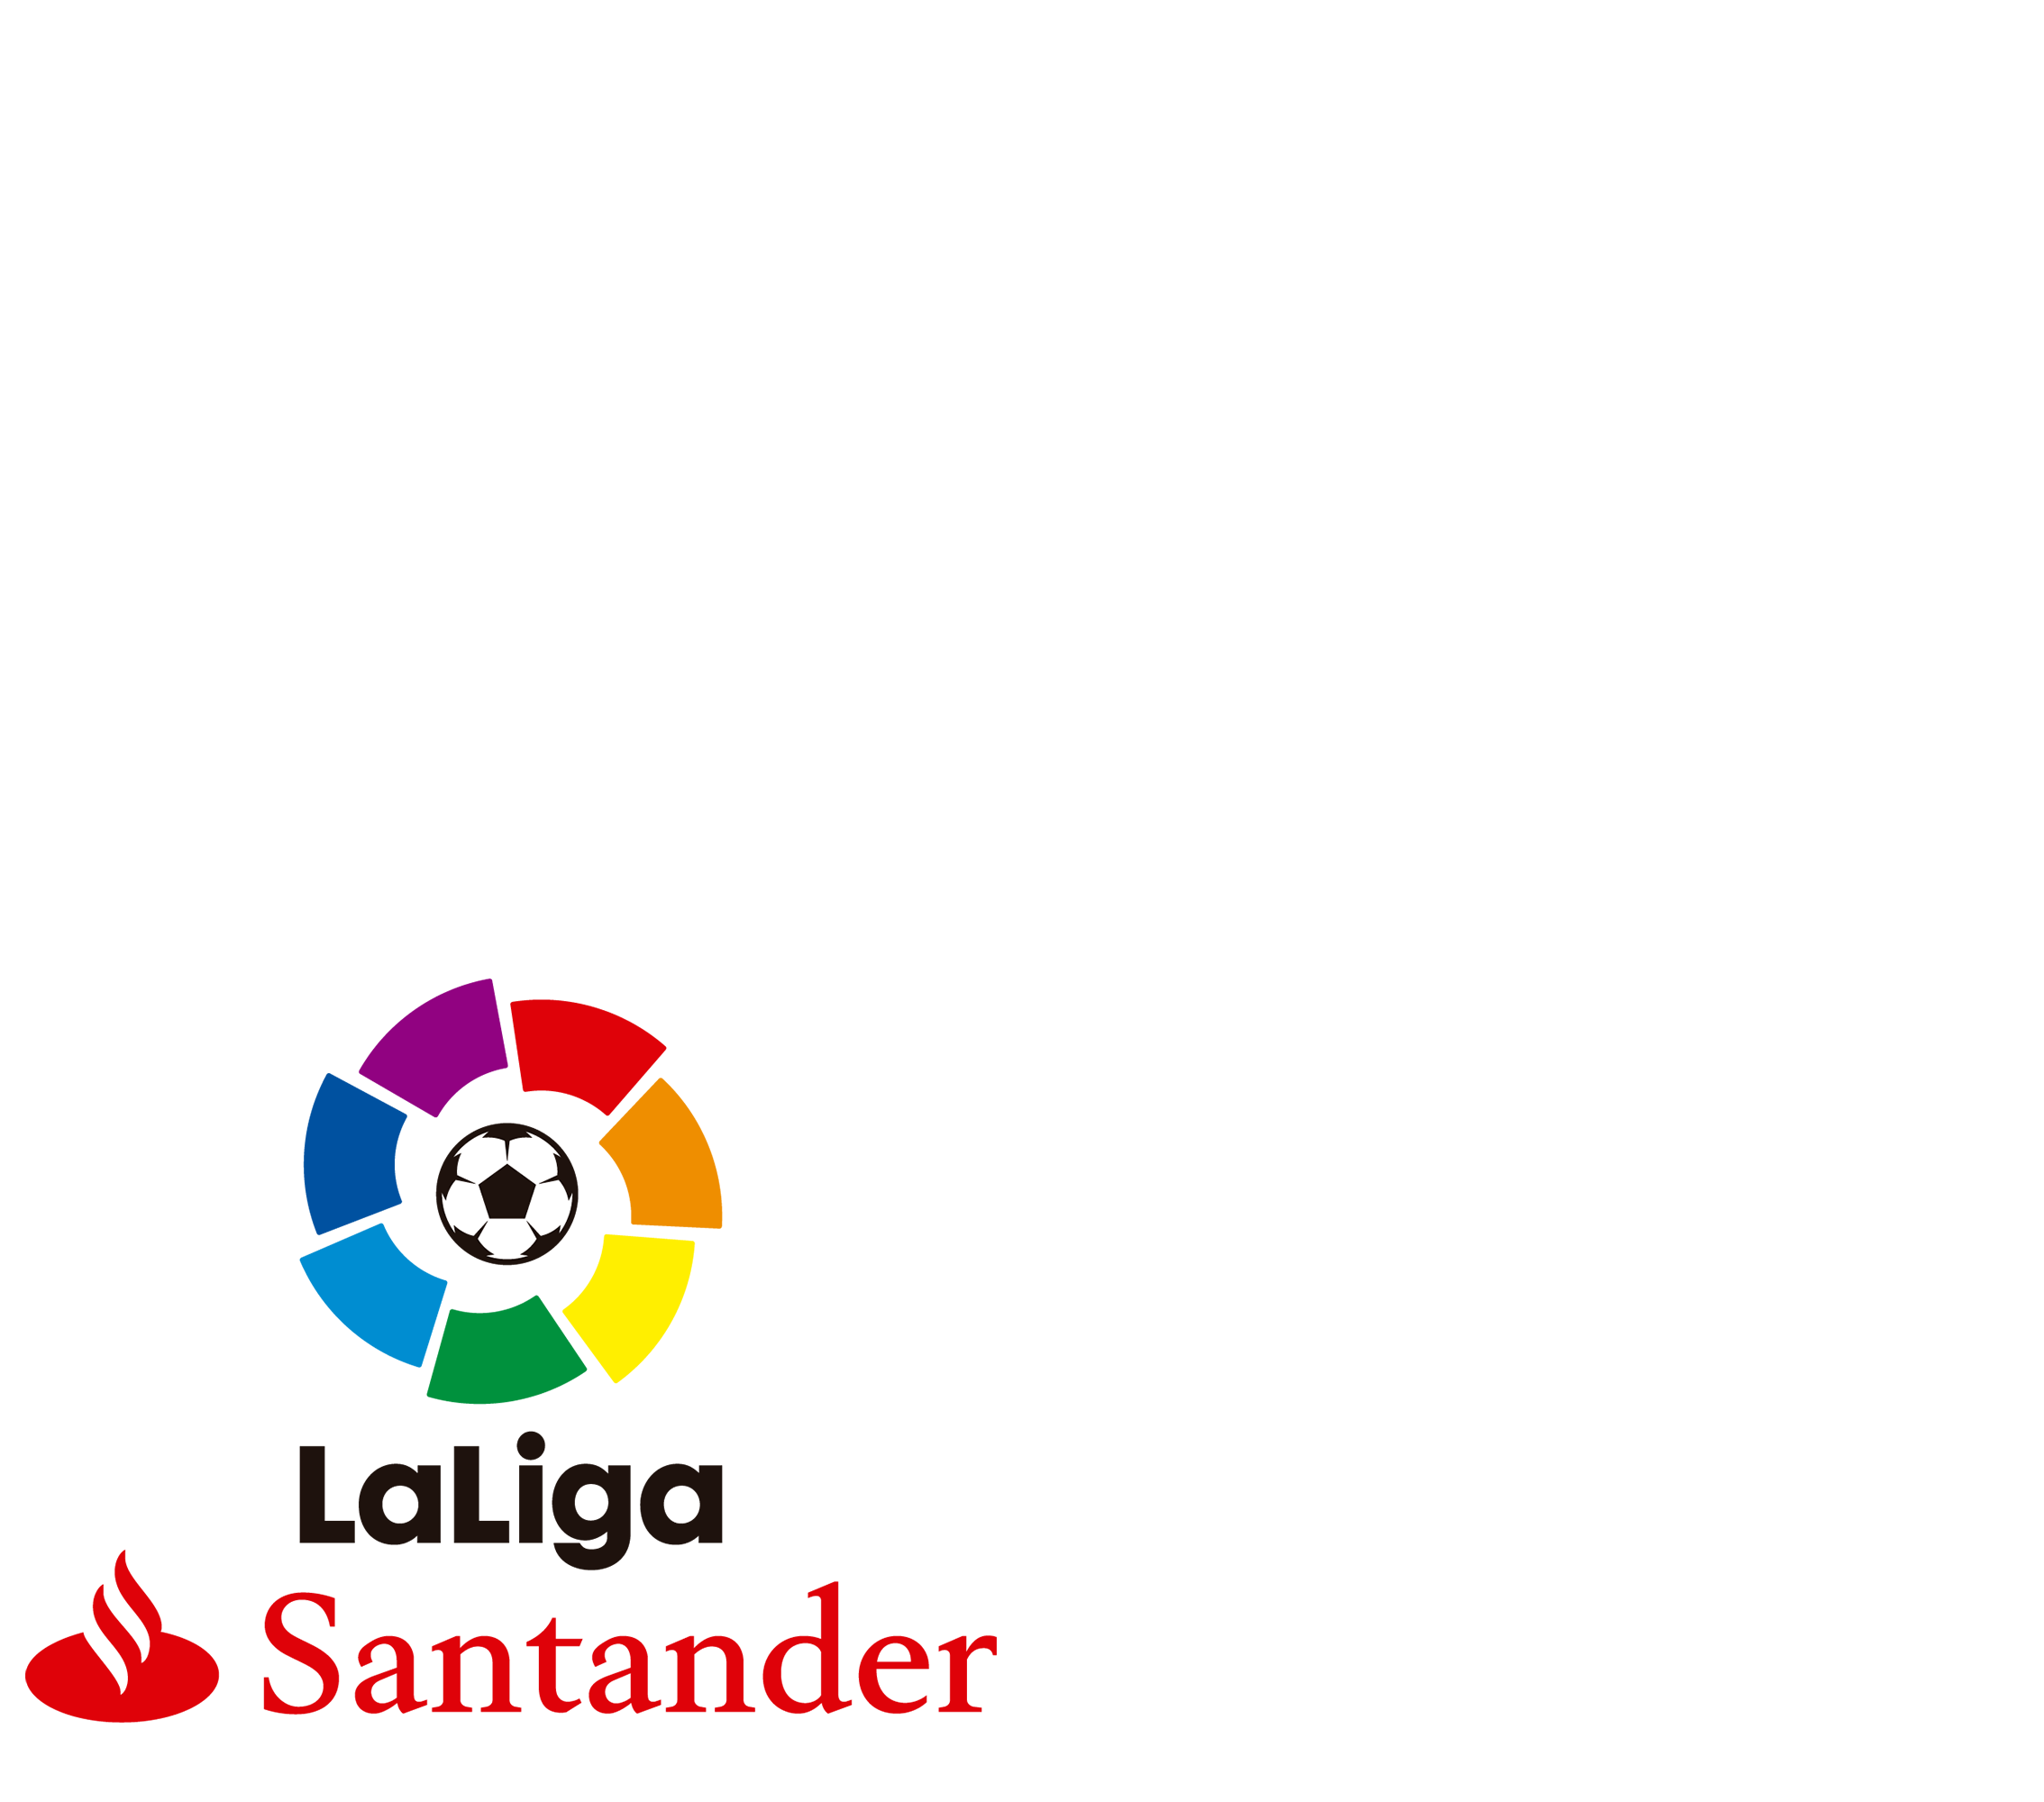 LaLliga Santander 2018/19